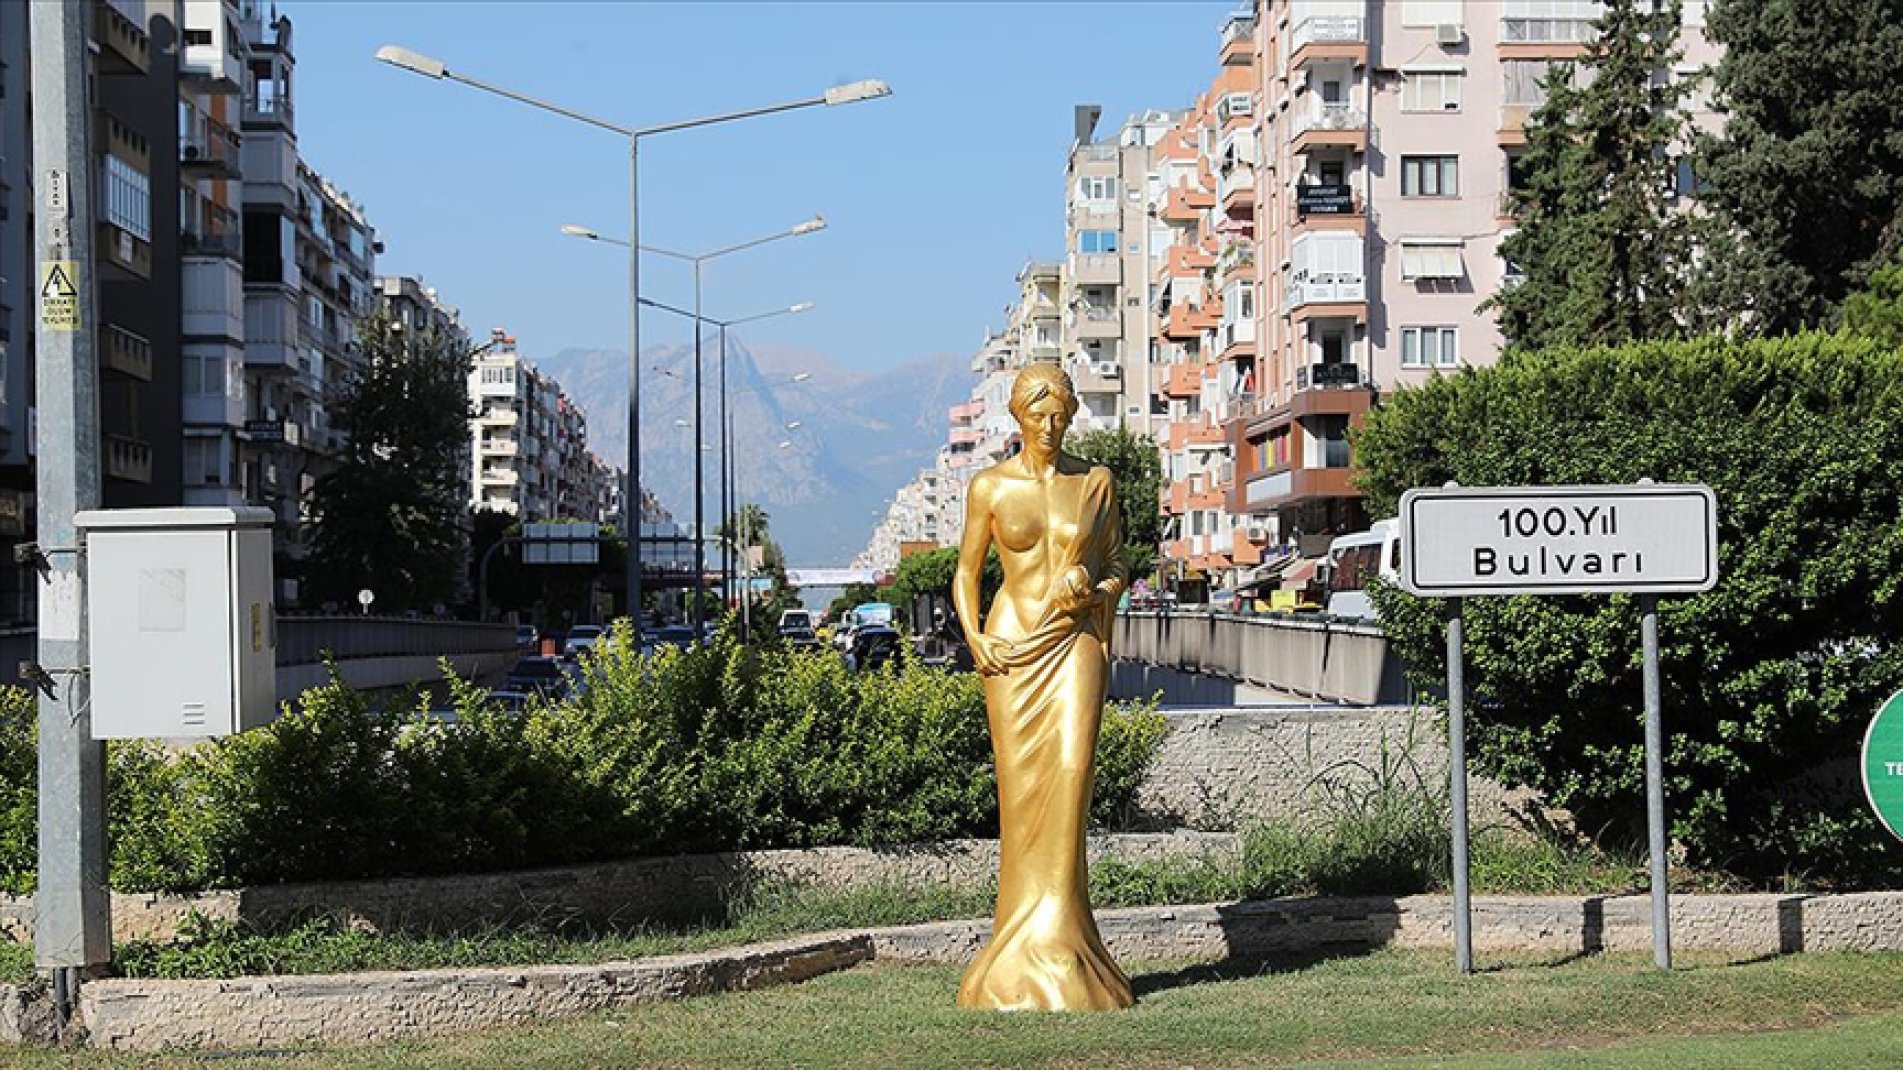 59. Antalya Altın Portakal Film Festivali'nin simge heykeli 'Venüs' 59 noktaya yerleştirildi